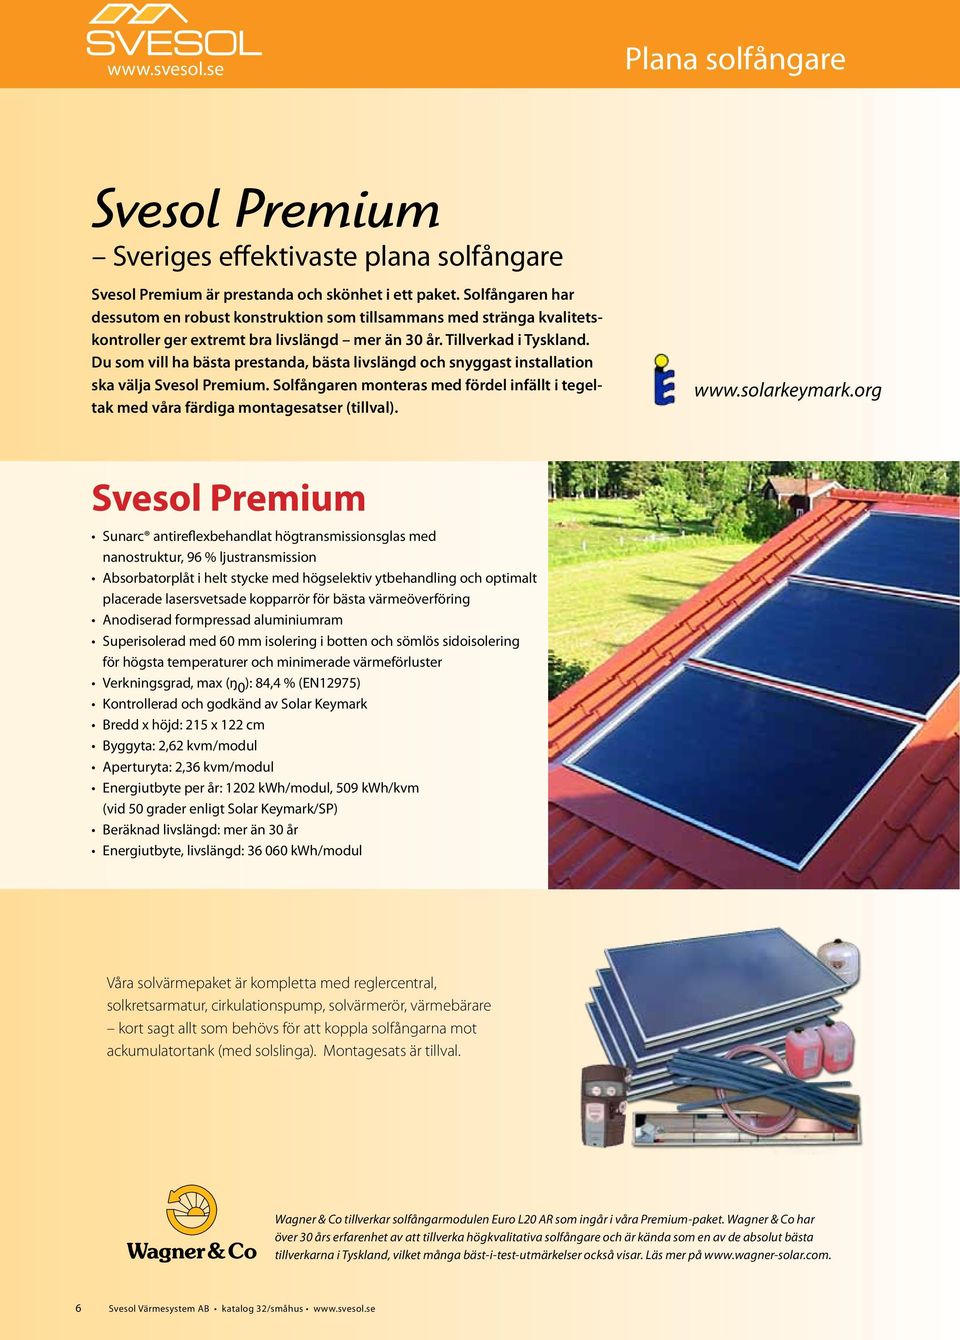 Du som vill ha bästa prestanda, bästa livslängd och snyggast installation ska välja Svesol Premium. Solfångaren monteras med fördel infällt i tegeltak med våra färdiga montagesatser (tillval). www.